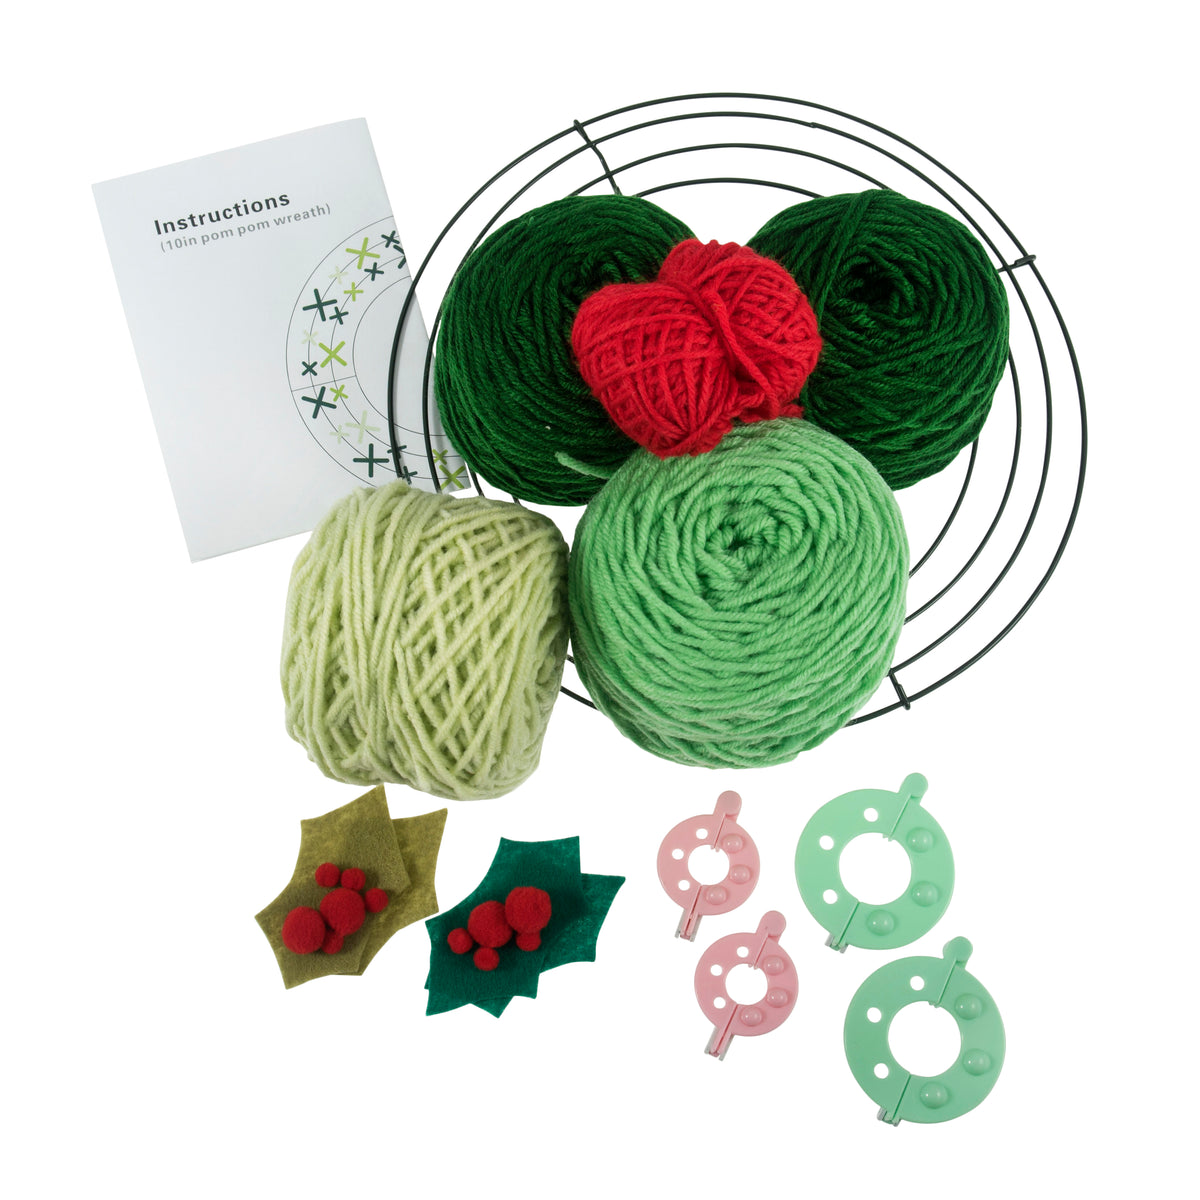 Pom Pom Wreath Kit